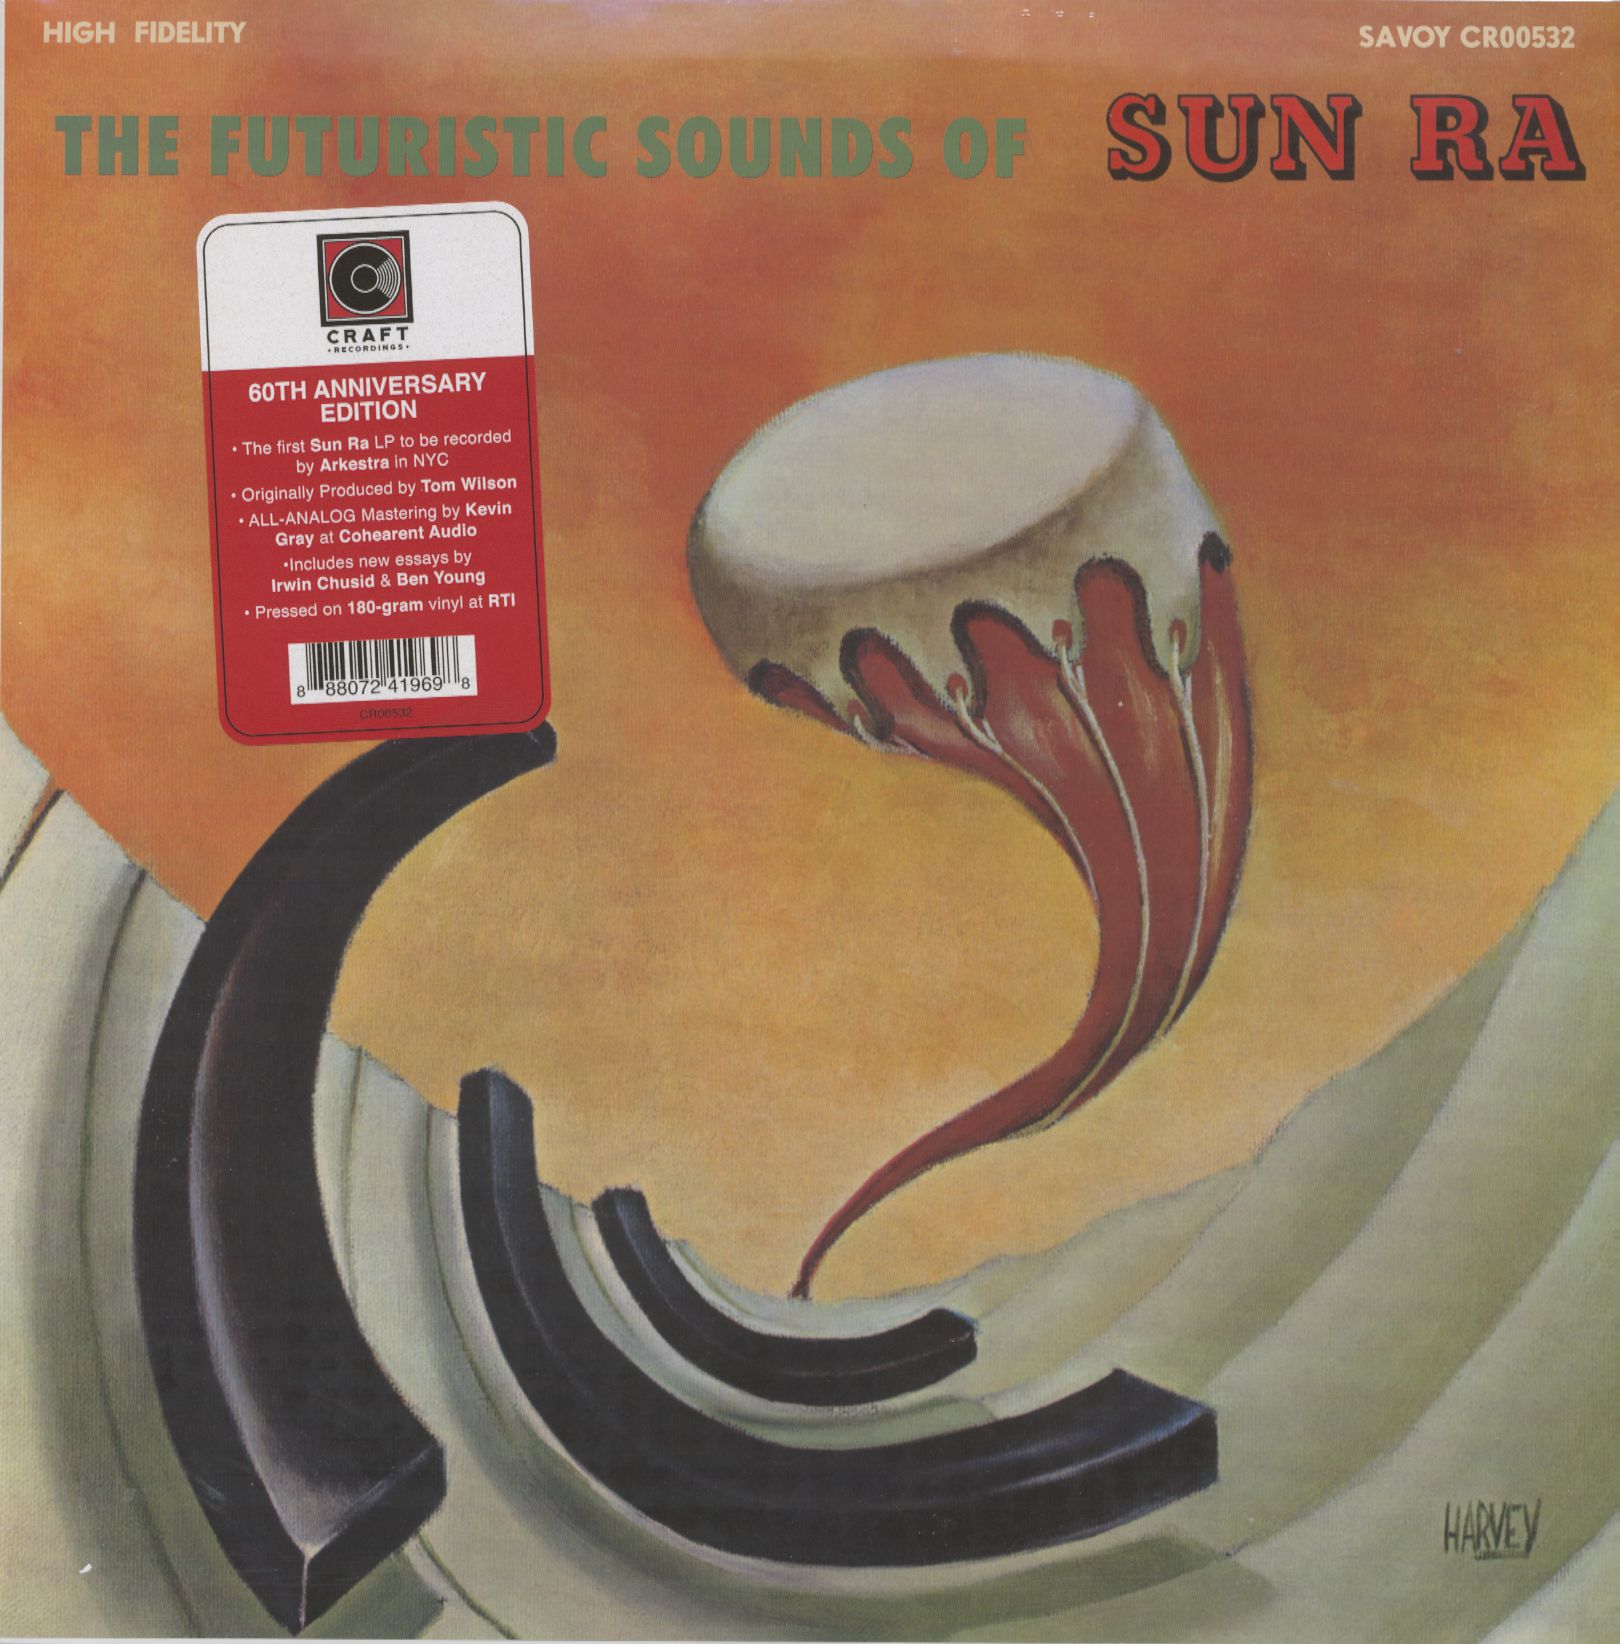 SUN RA - THE FUTURISTIC SOUNDS OF (60TH ANNIVERSARY) - LP